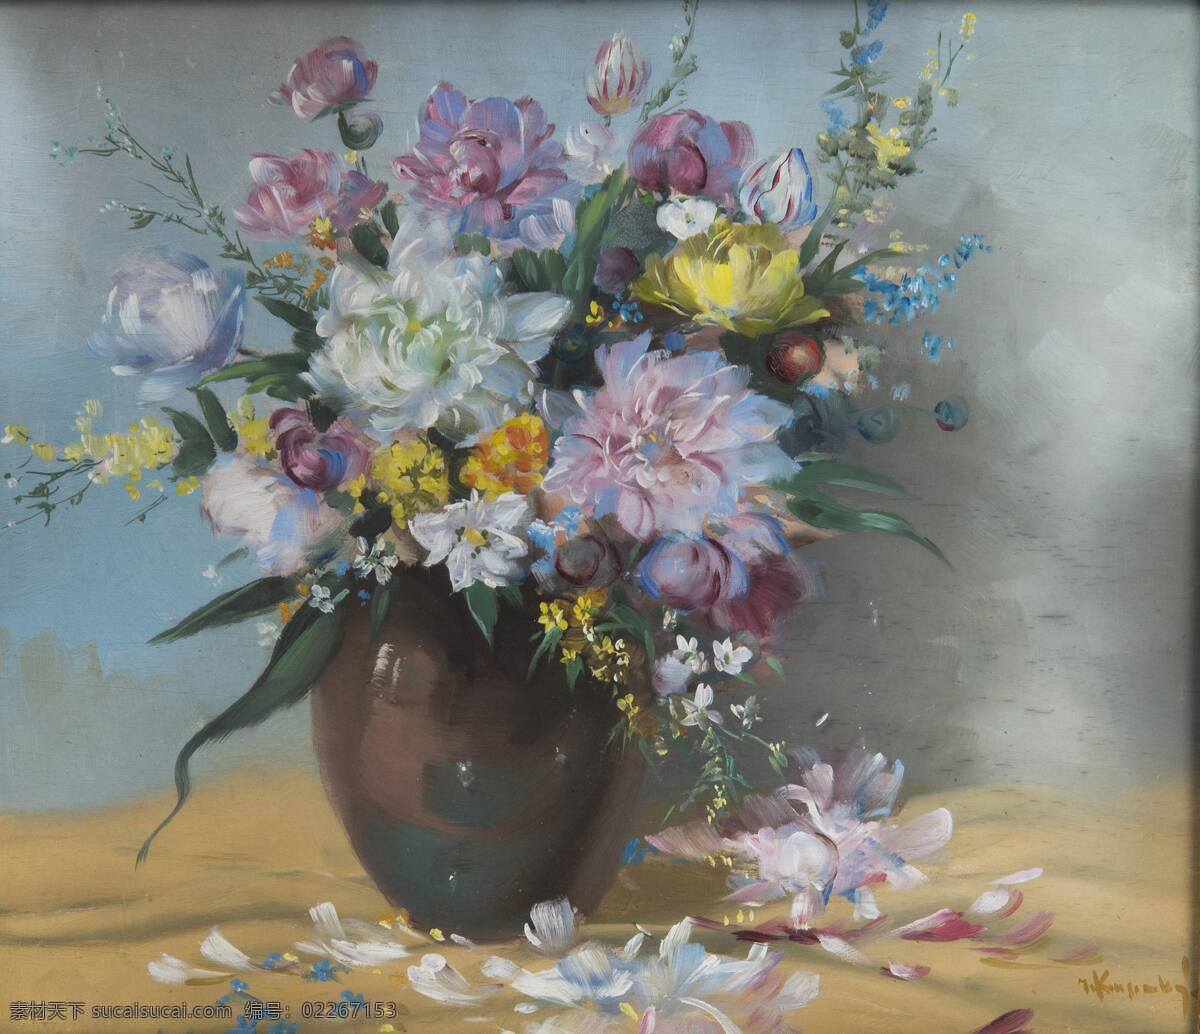 静物鲜花 混搭鲜花 花瓶 大丽花 郁金香 20世纪油画 油画 文化艺术 绘画书法